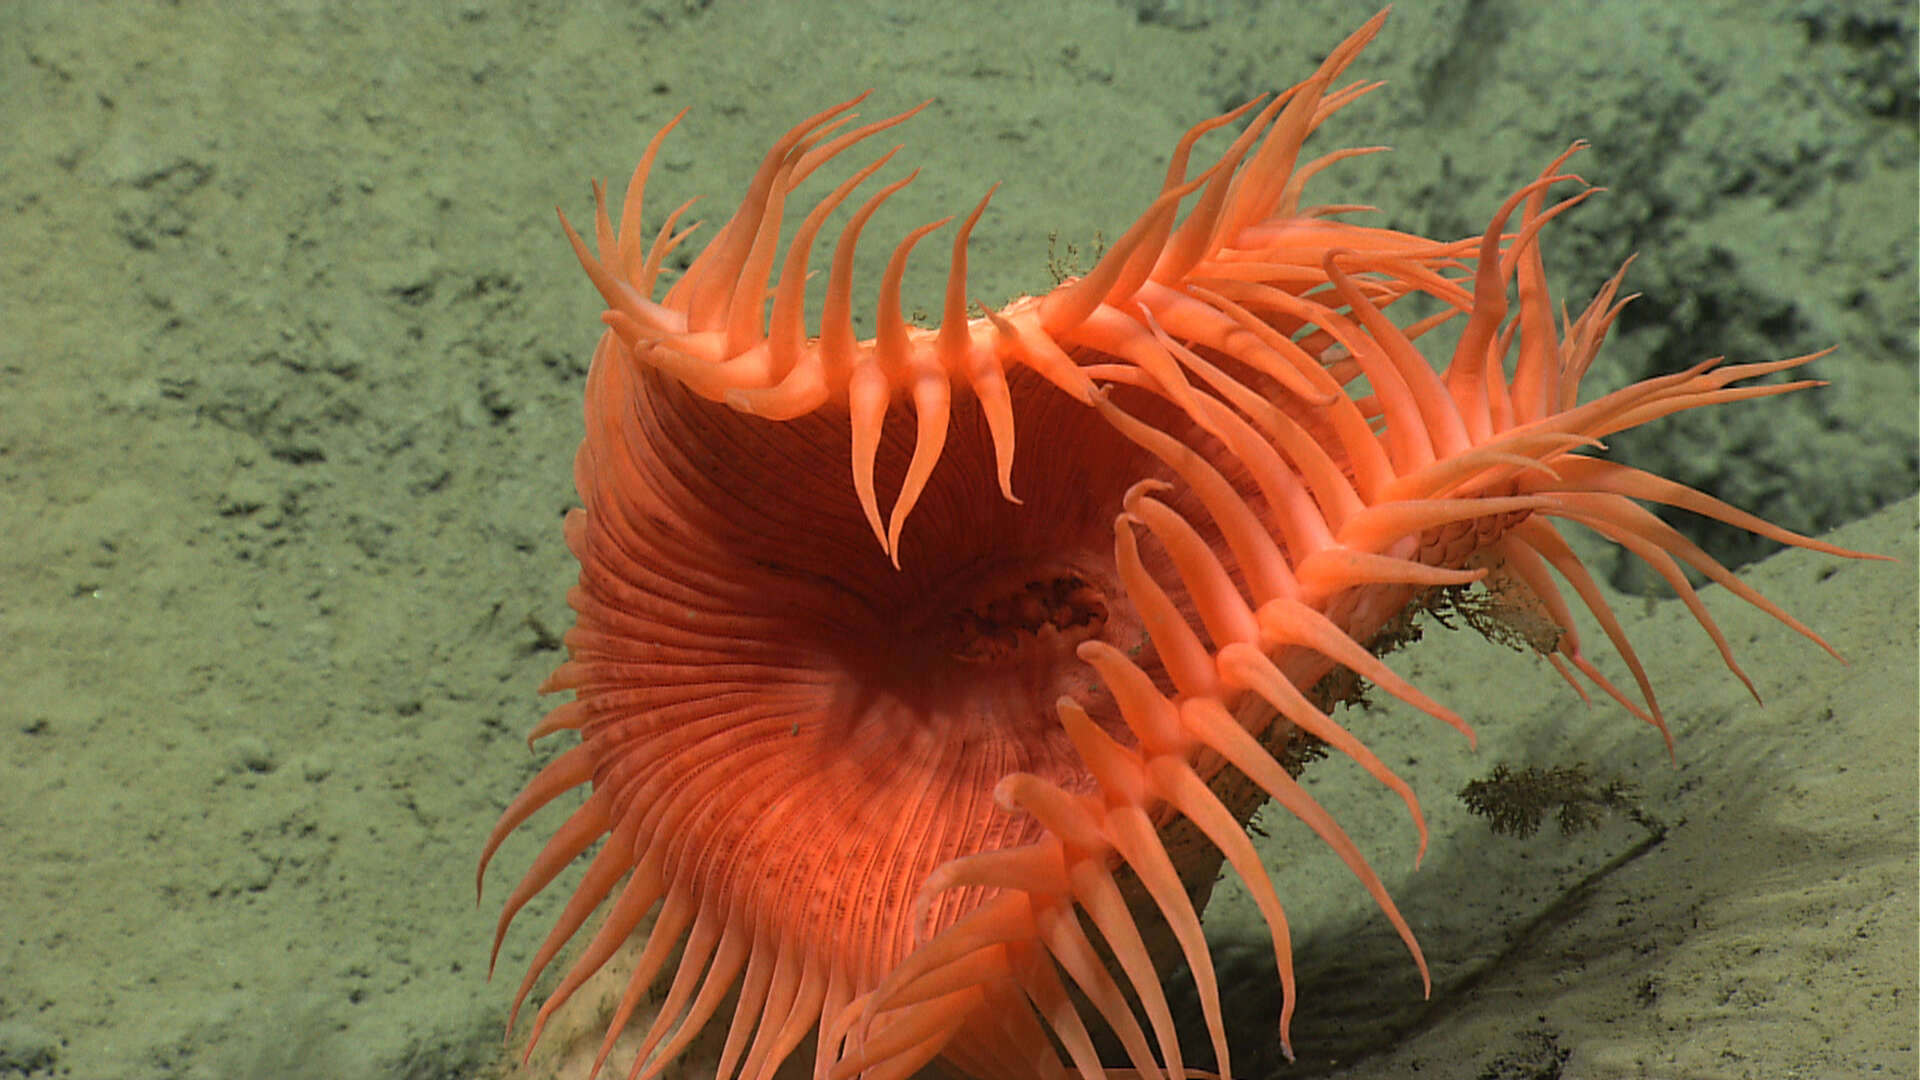 Image of Venus flytrap sea anemone